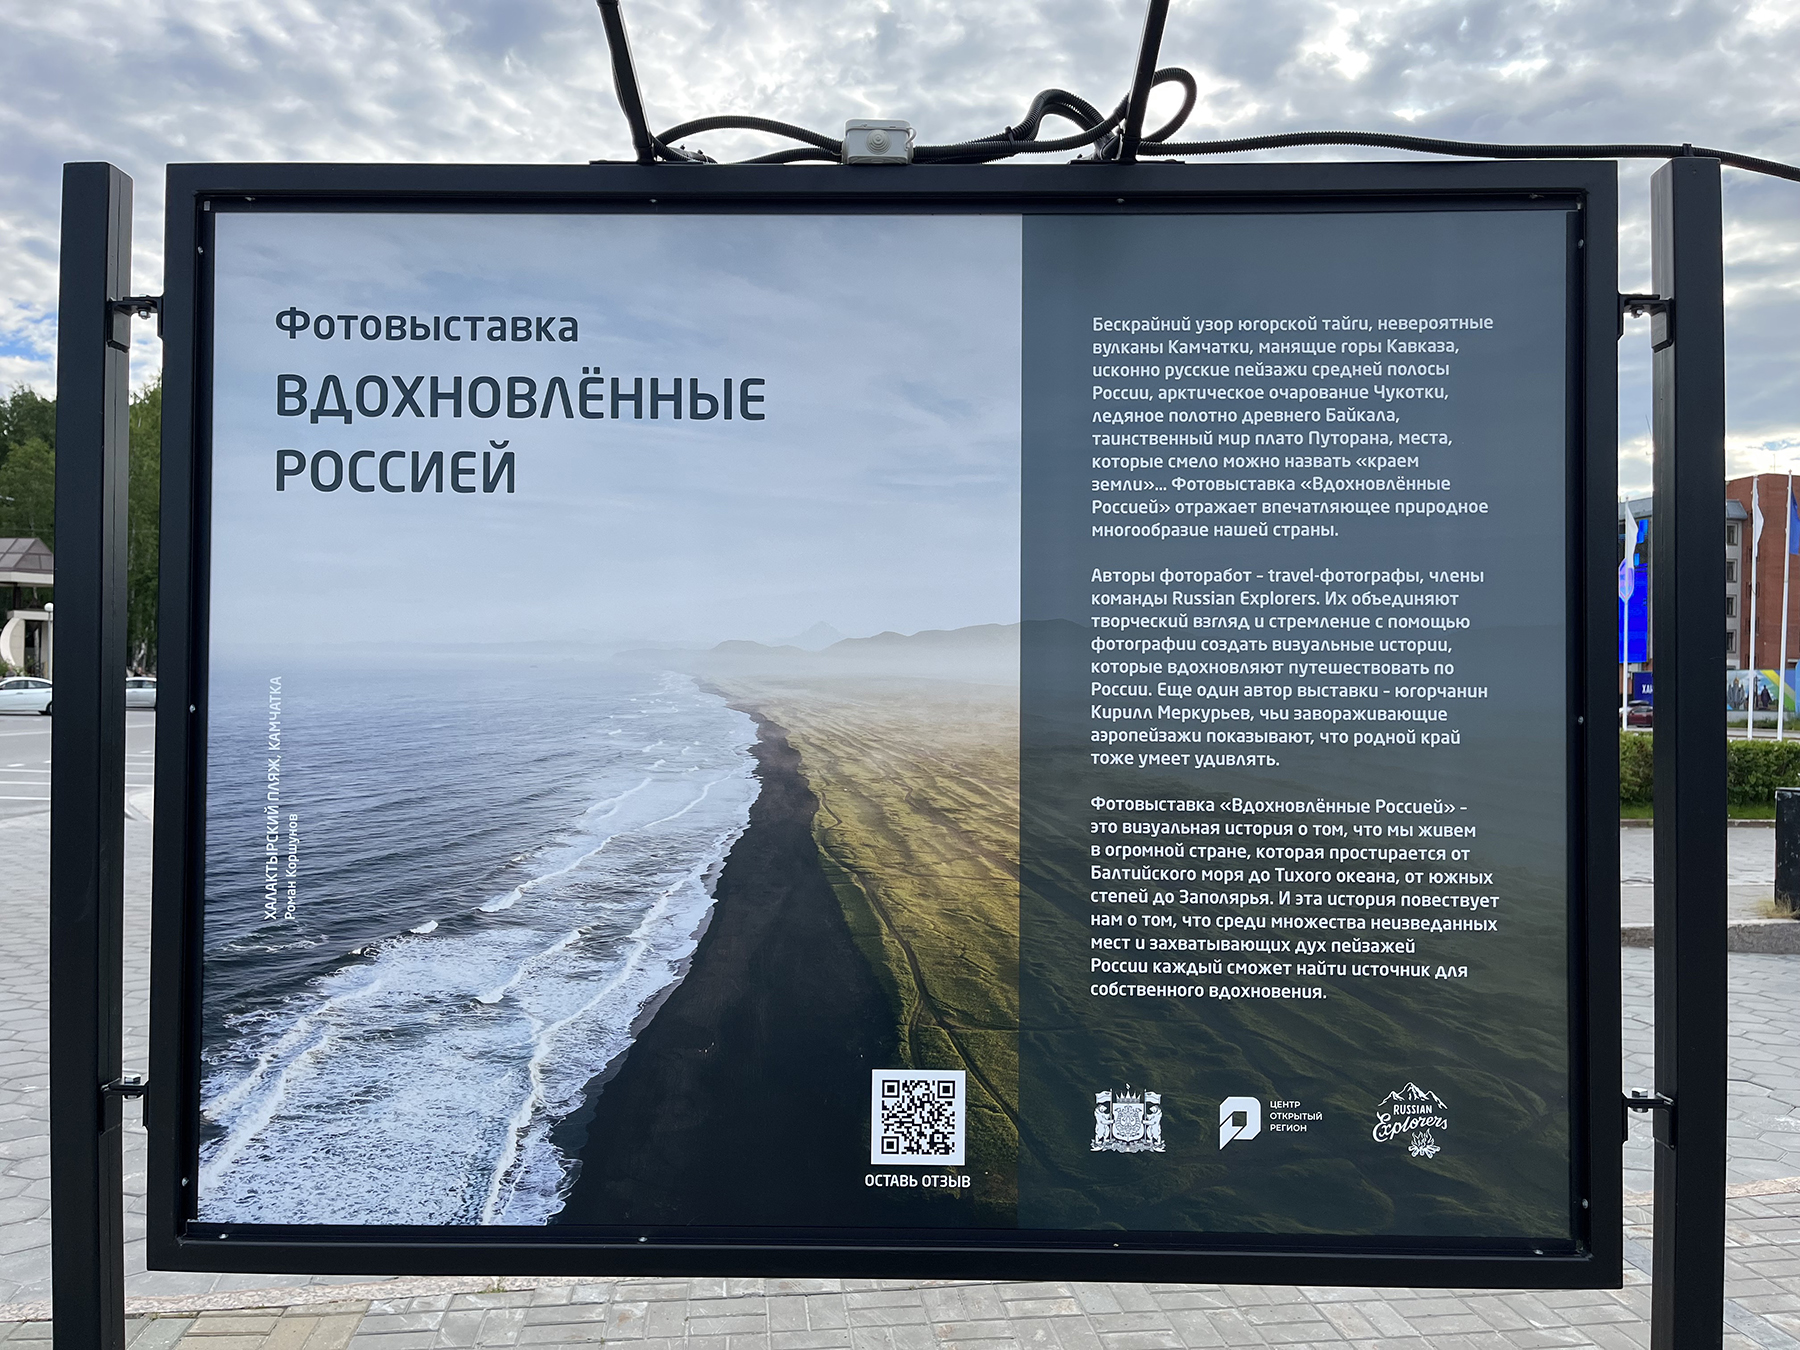 Вдохновлённые Россией: в центре Ханты-Мансийска открылась фотовыставка с моими работами.0